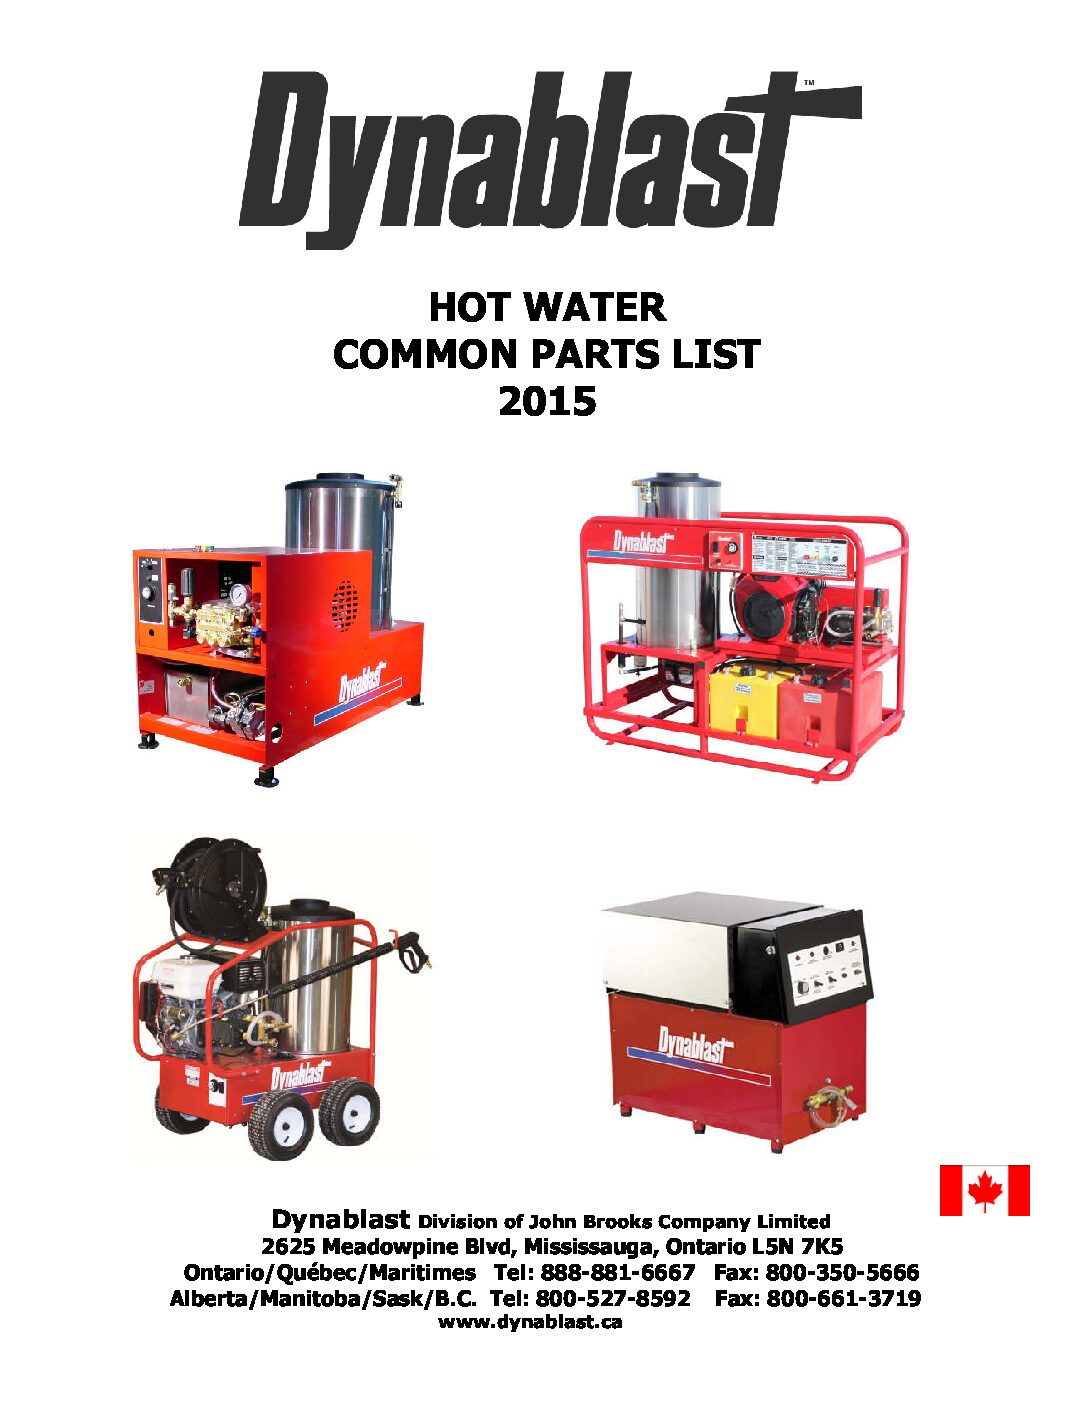 Dynablast Hot Water Parts List